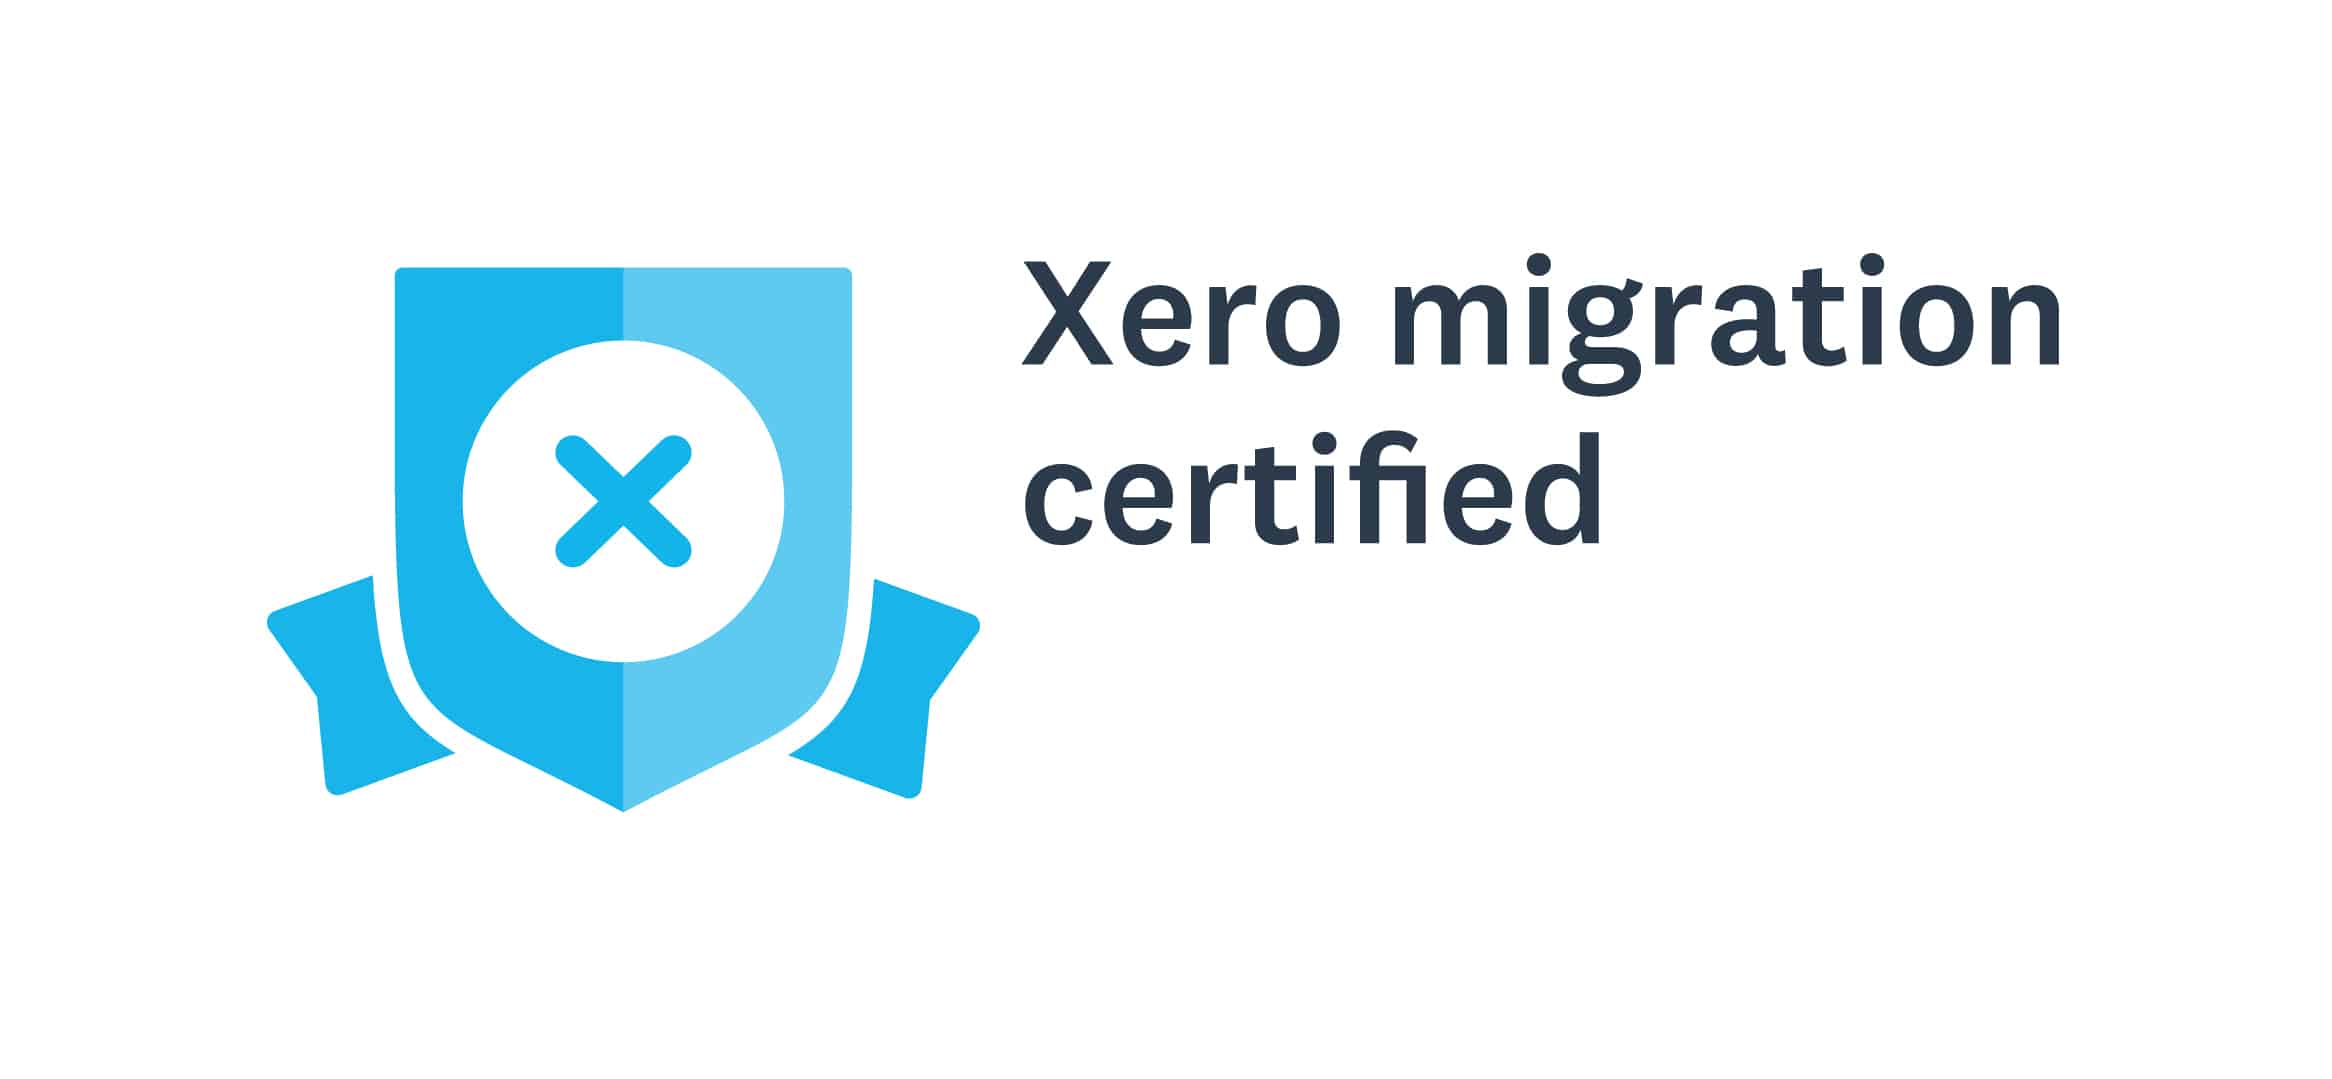 XERO Migration Certified